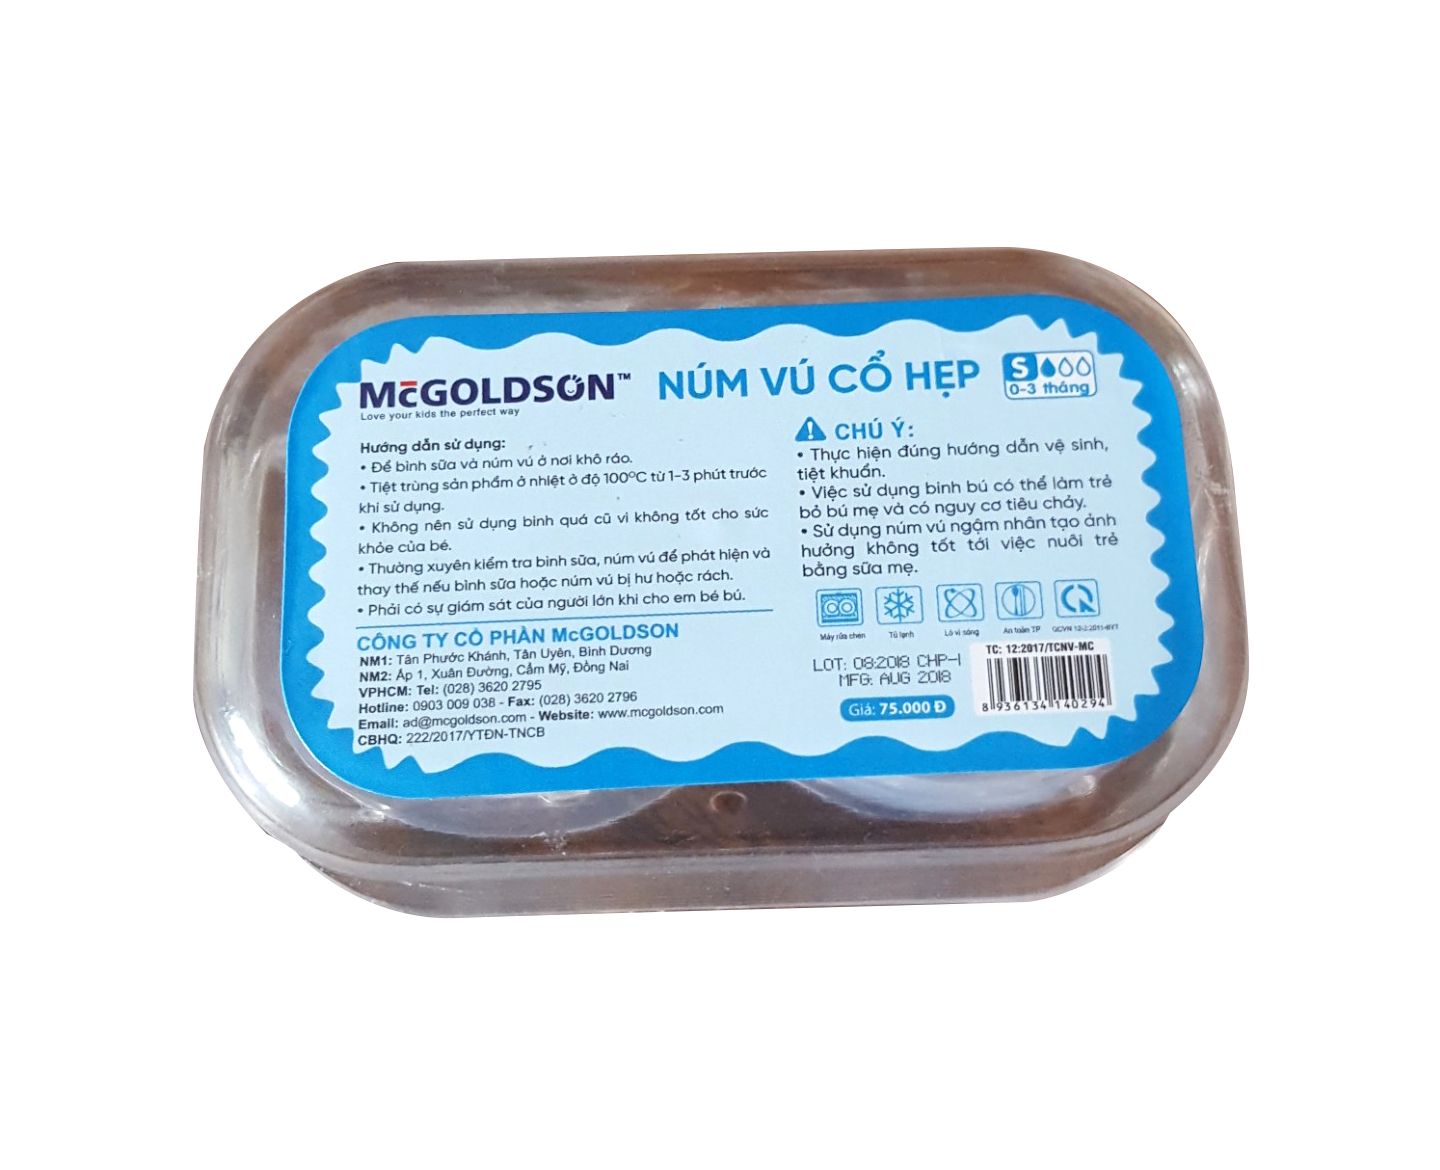  Núm vú cổ hẹp siêu mềm McGOLDSON Premium (2 cái/hộp) 